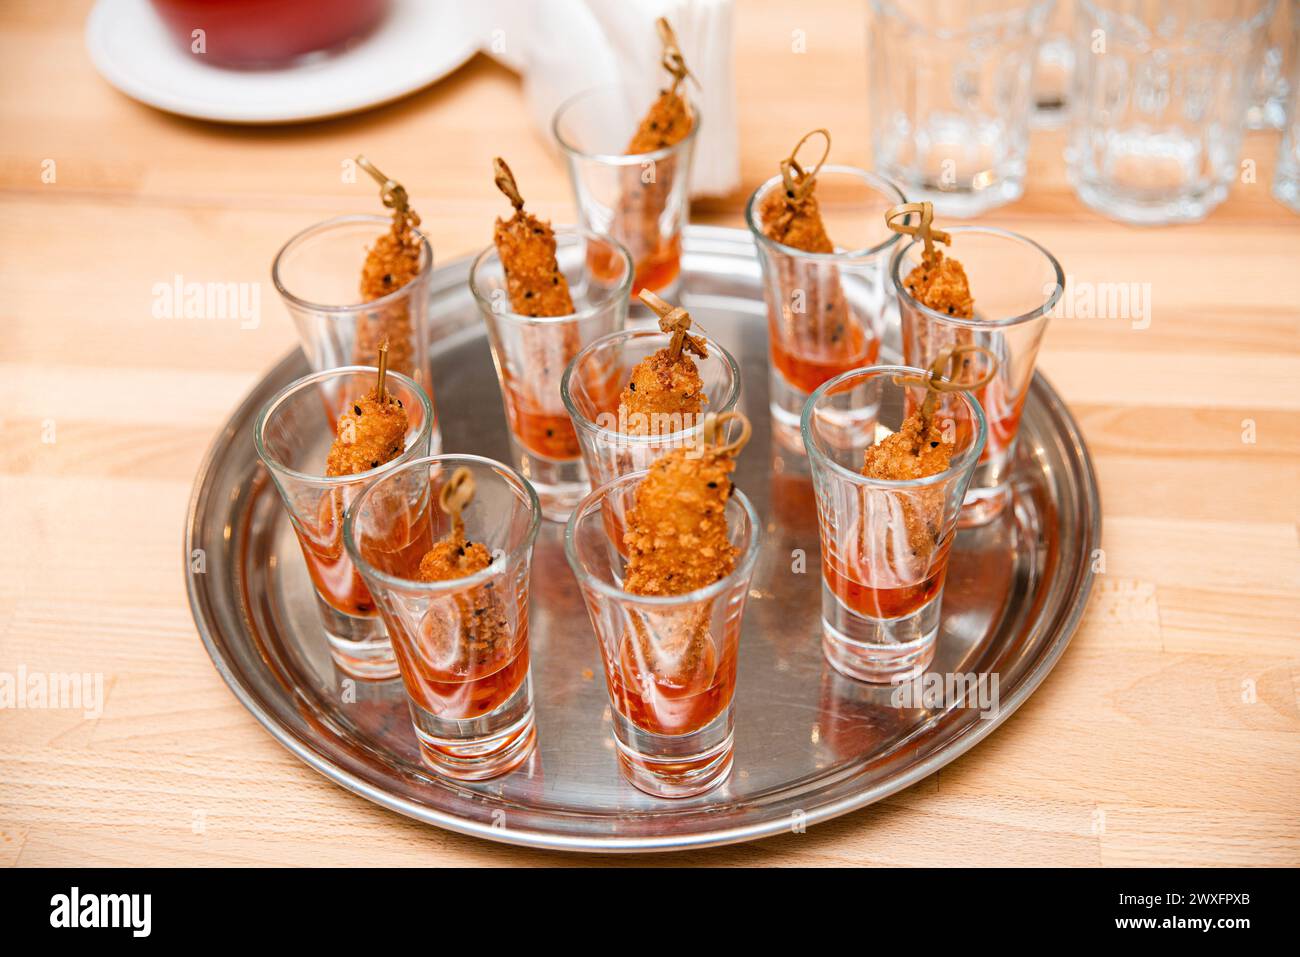 Bicchieri da shot riempiti con salsa dolce e piccante e conditi con gamberi fritti croccanti, presentati su un vassoio d'argento per un elegante evento di catering. Foto Stock